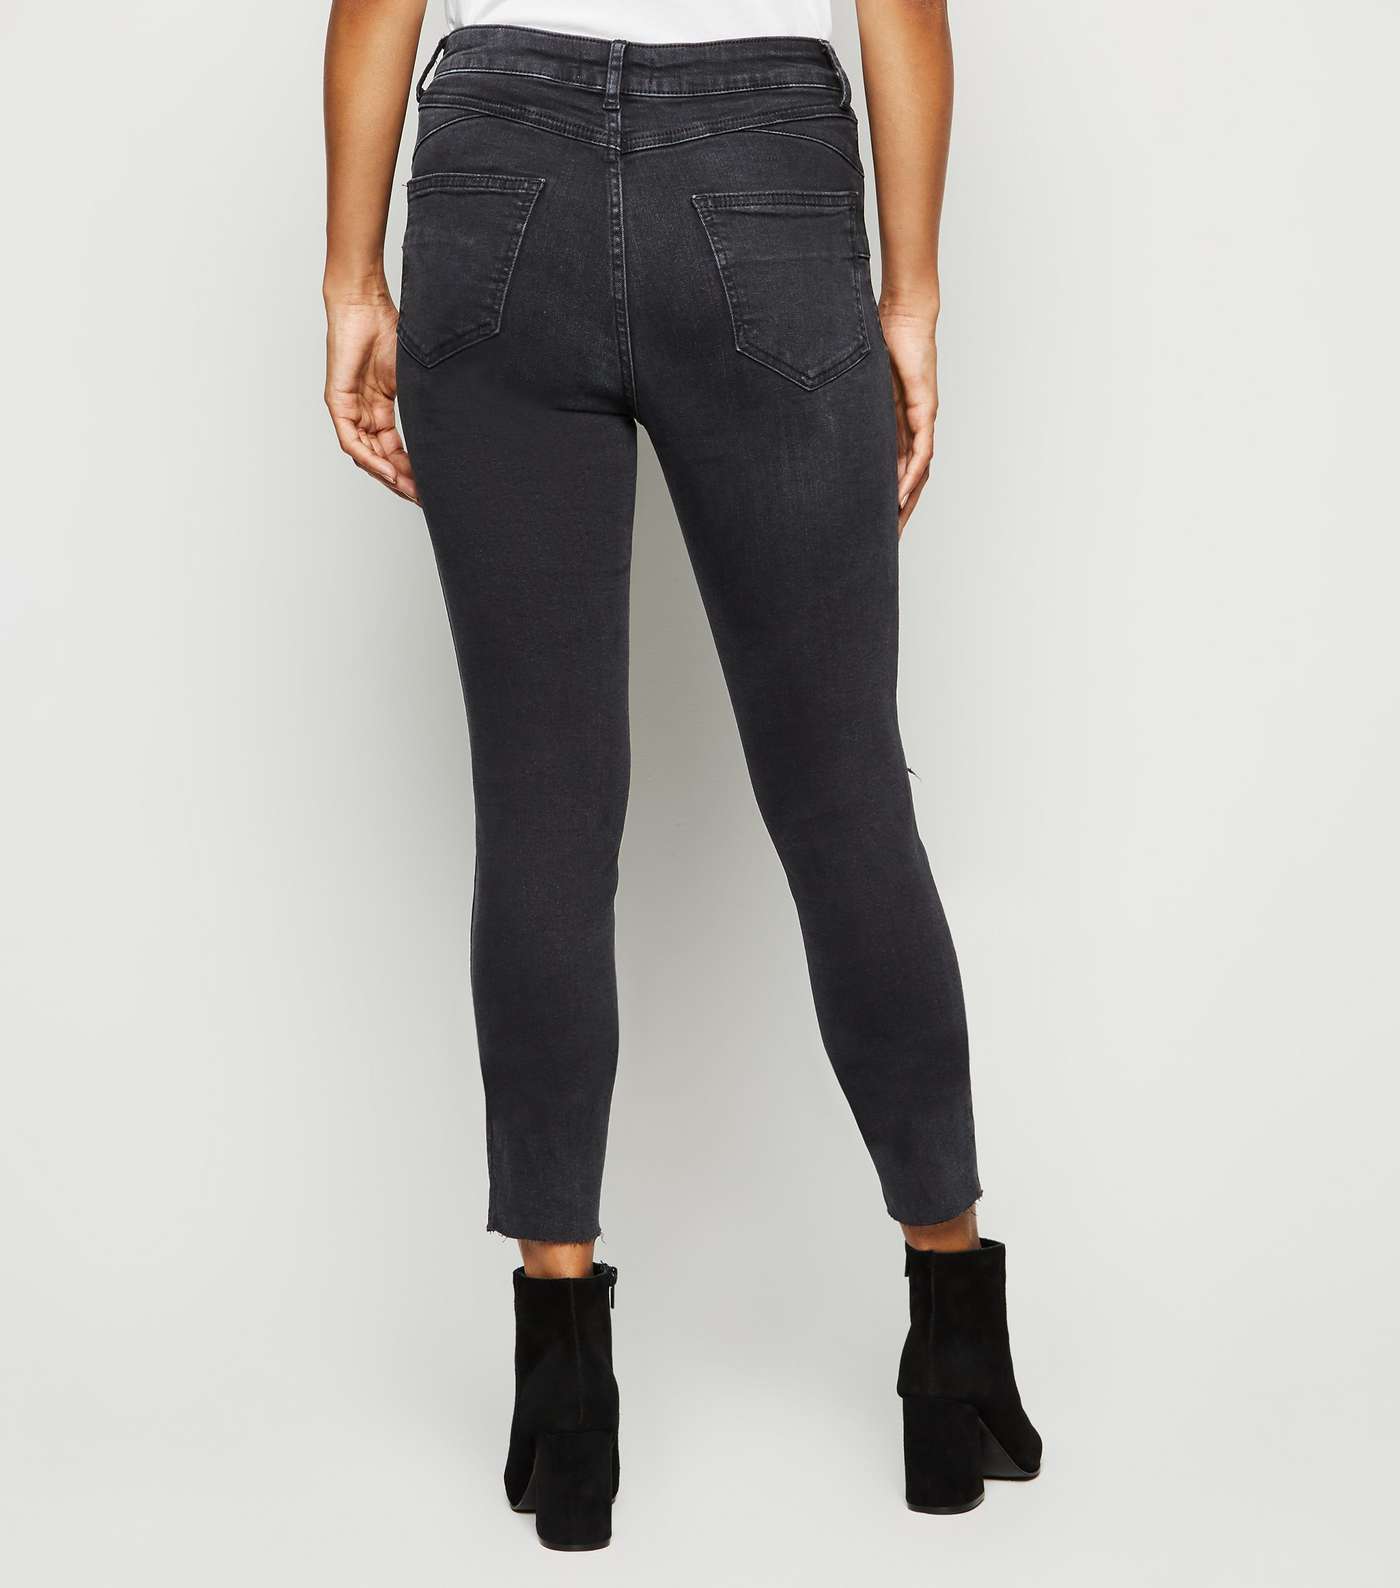 Petite Black High Rise 'Lift & Shape' Skinny Jeans Image 5